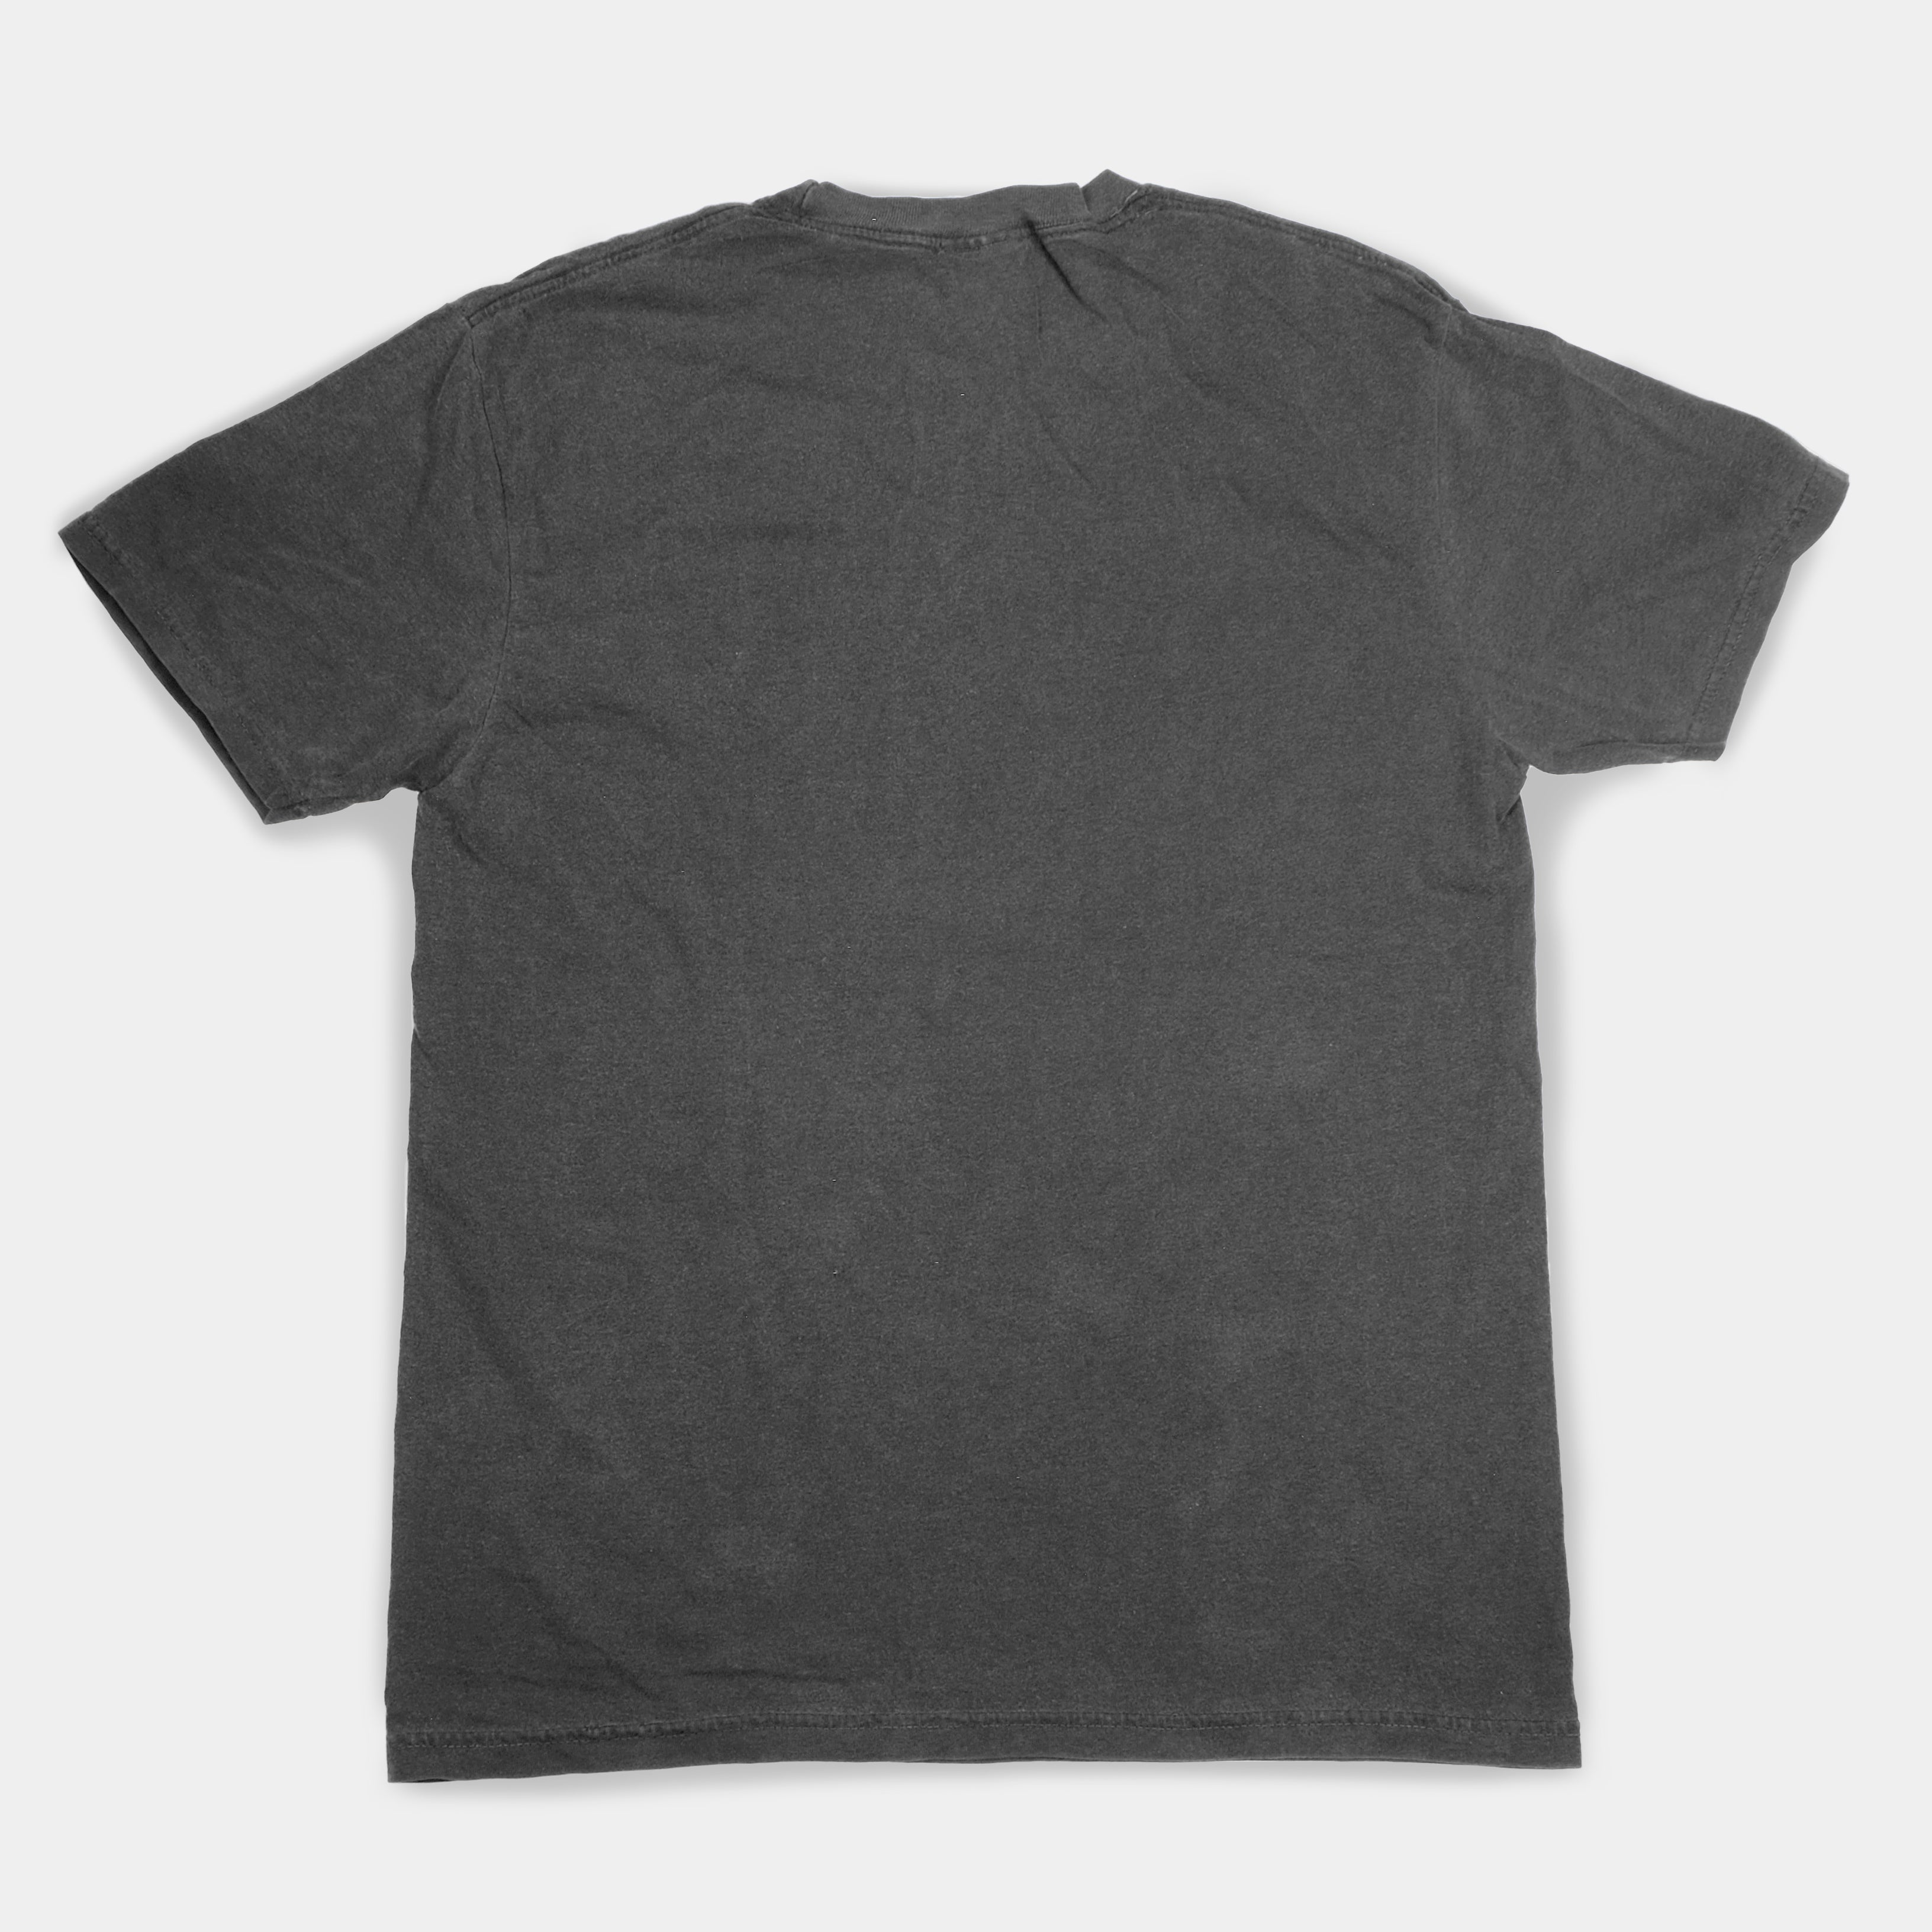 Earl's Closet - Earl McGrath "Clean Records" Gray T-Shirt